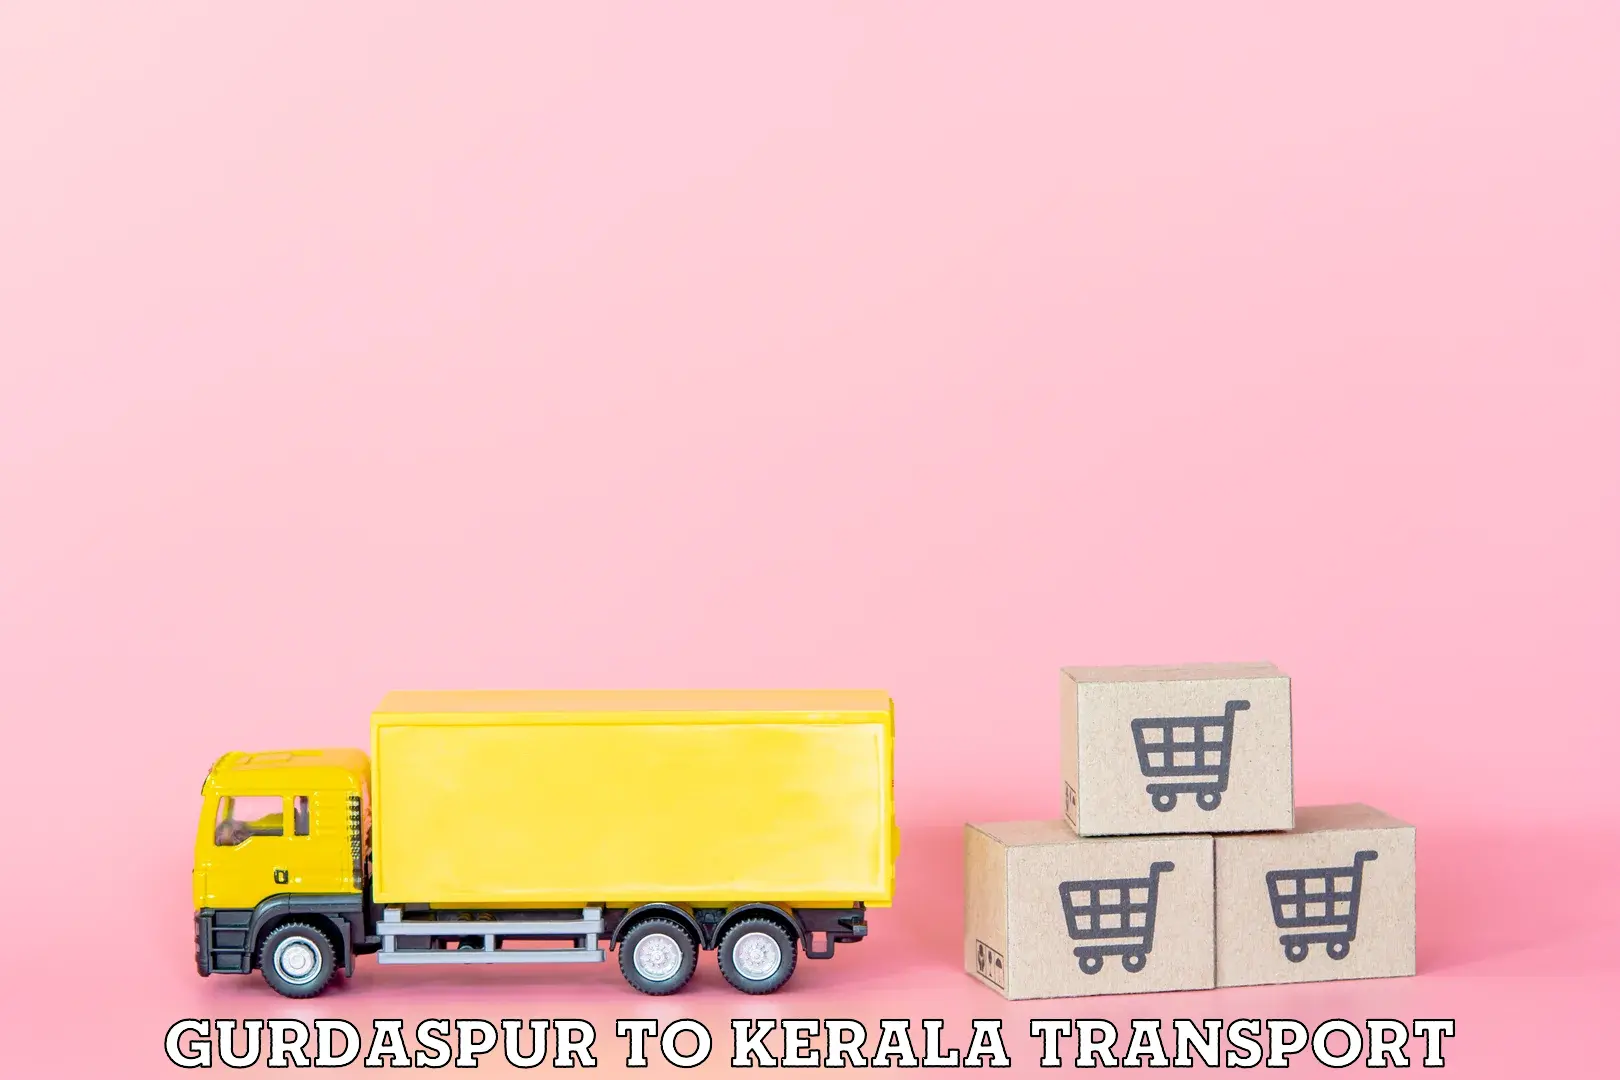 Truck transport companies in India in Gurdaspur to Kazhakkoottam